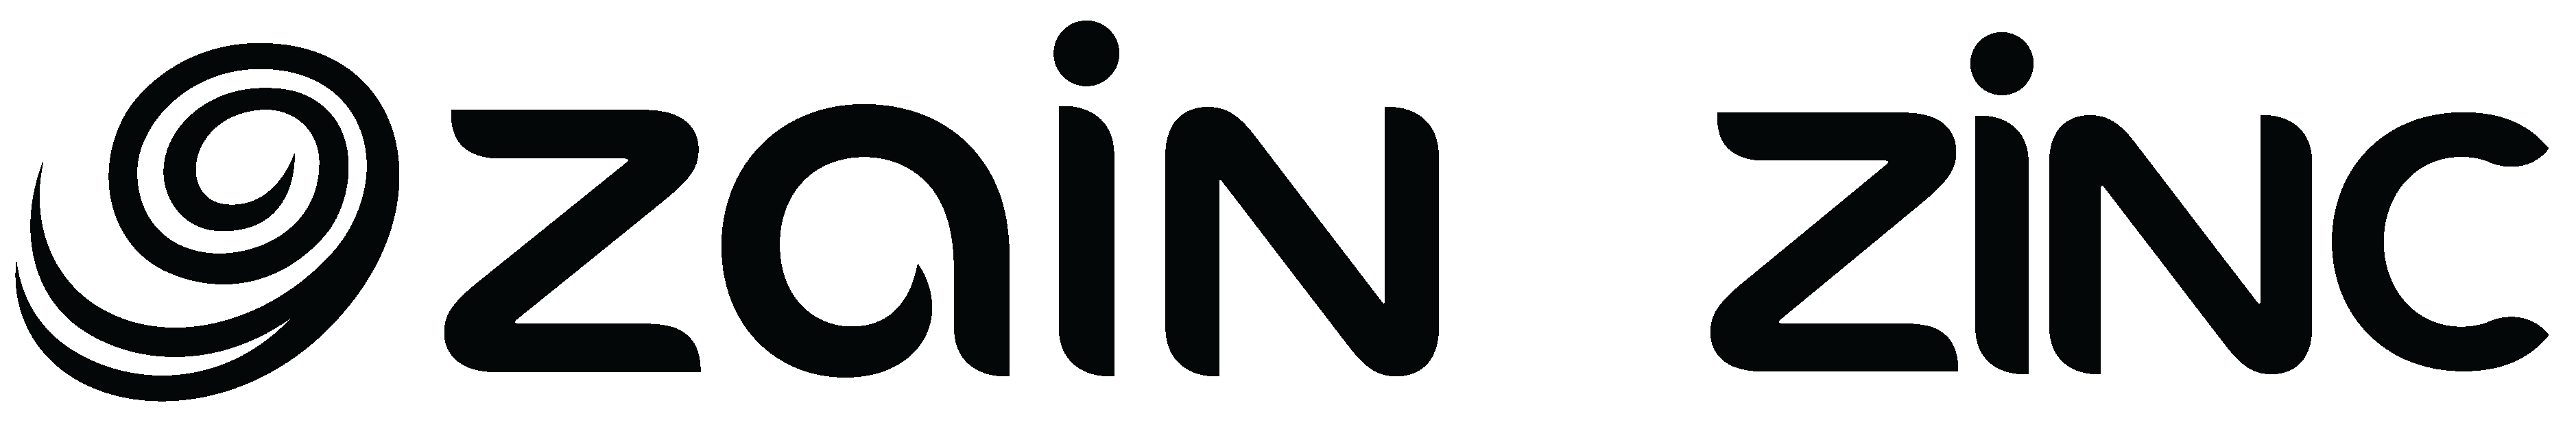 ZAIN - ZINC Logo design-01